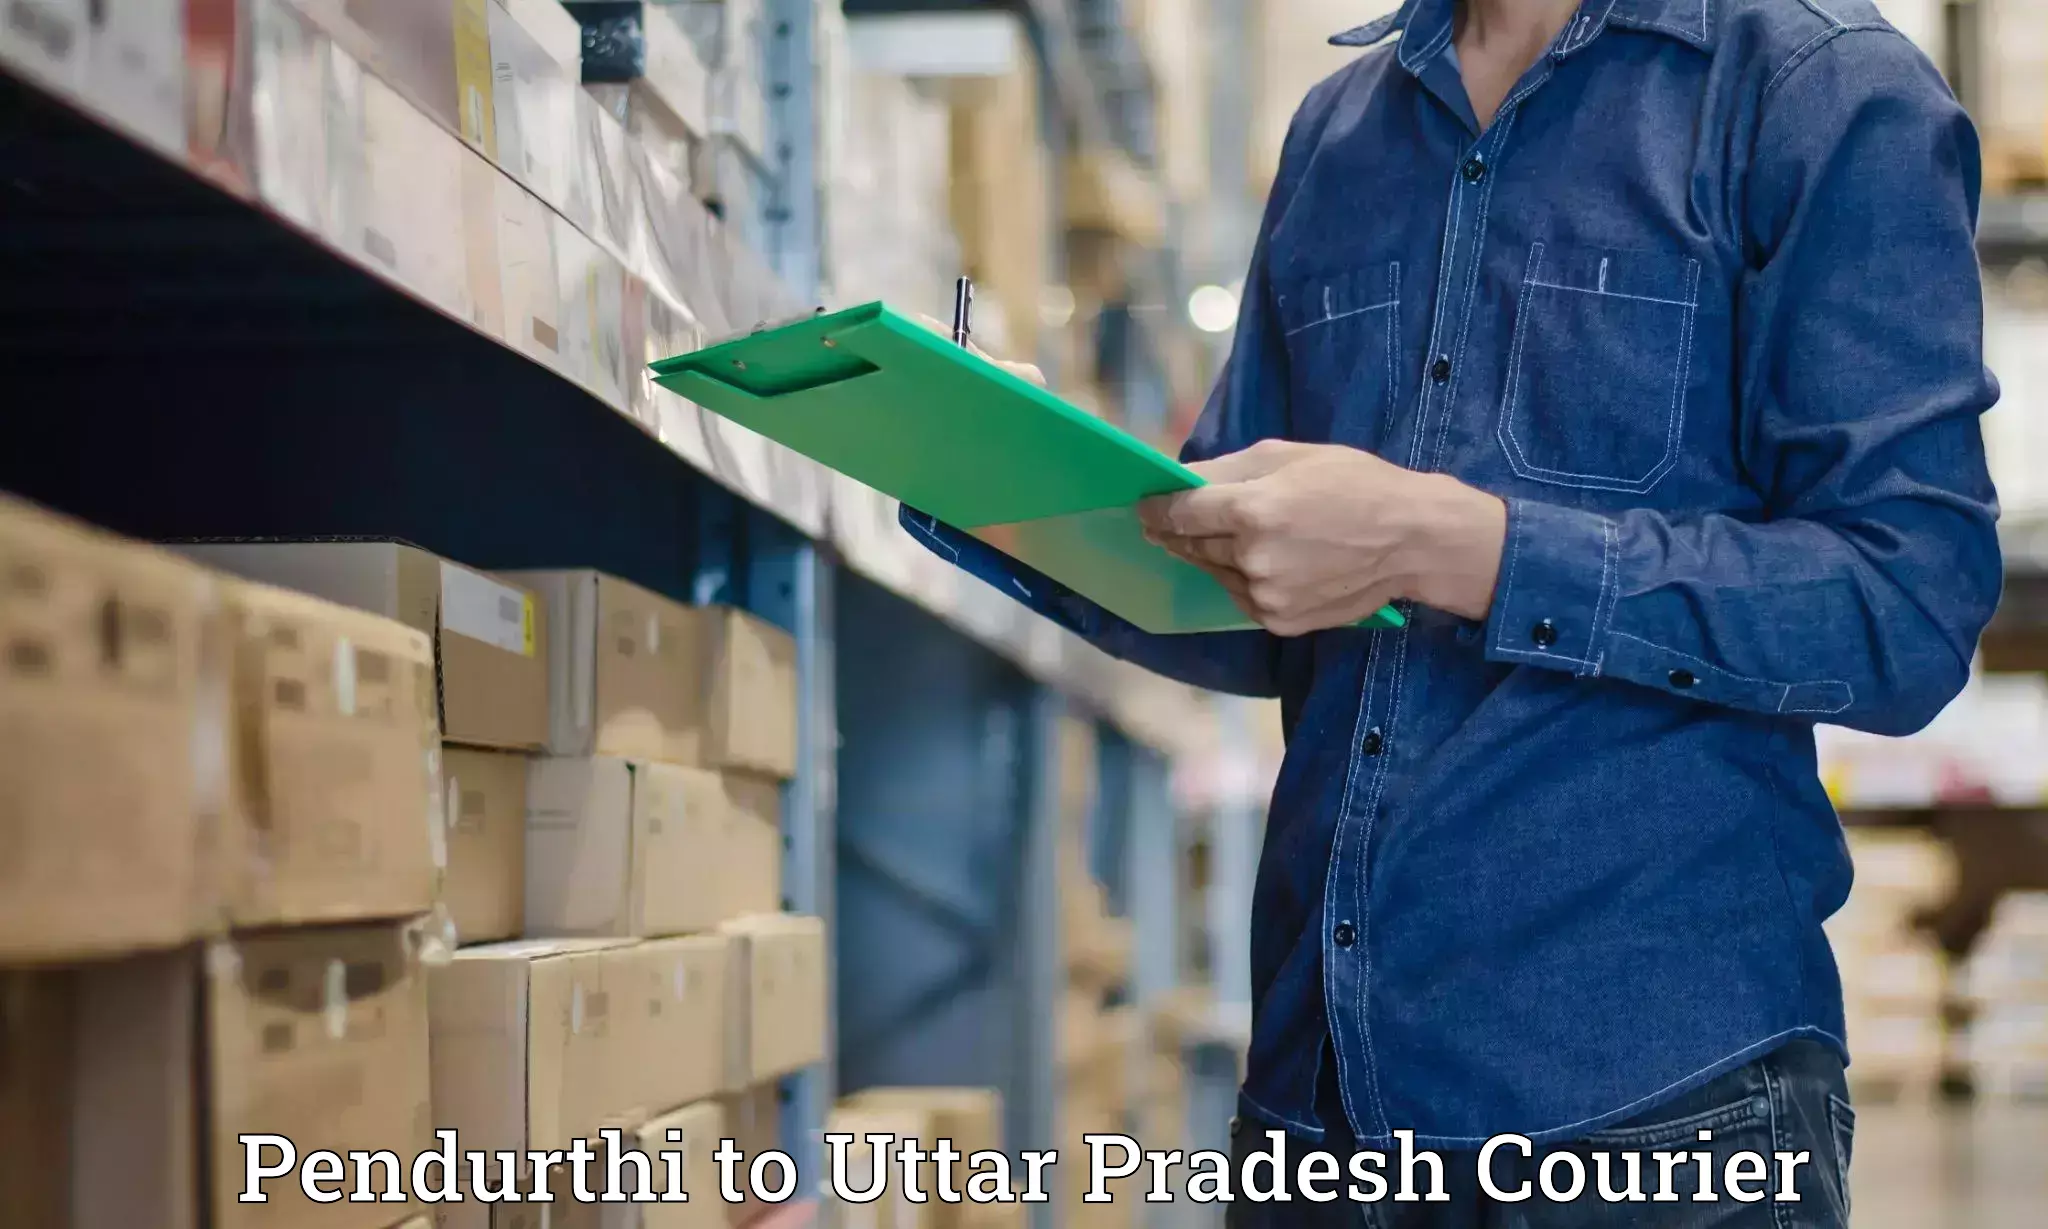 Special handling courier Pendurthi to Dariyabad